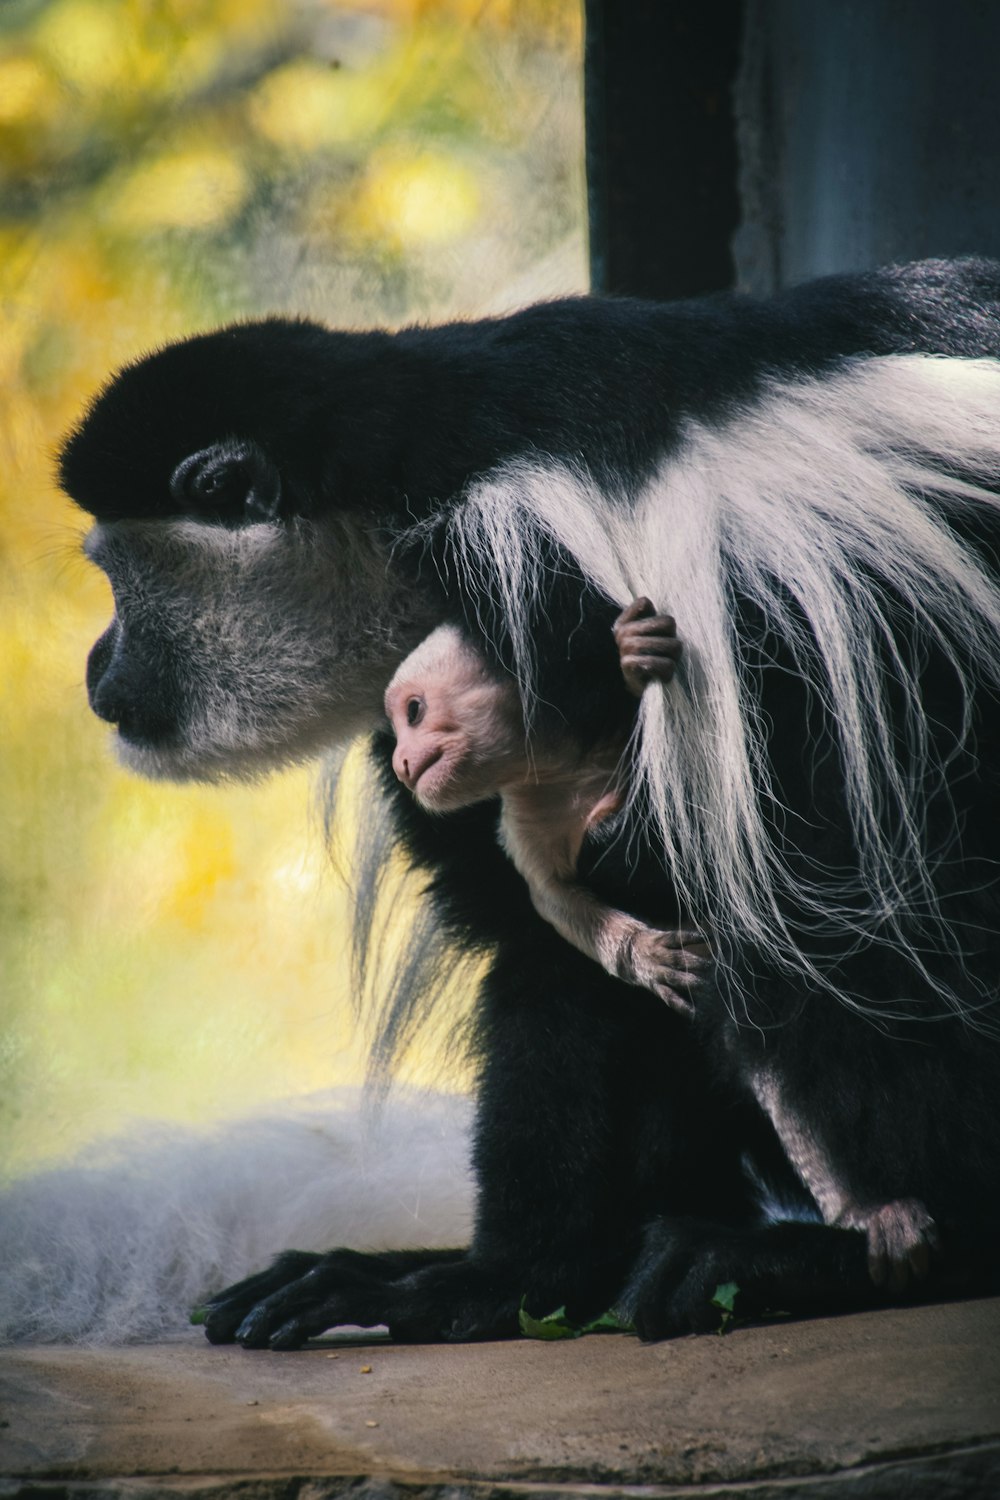 a monkey holding a baby monkey on its back